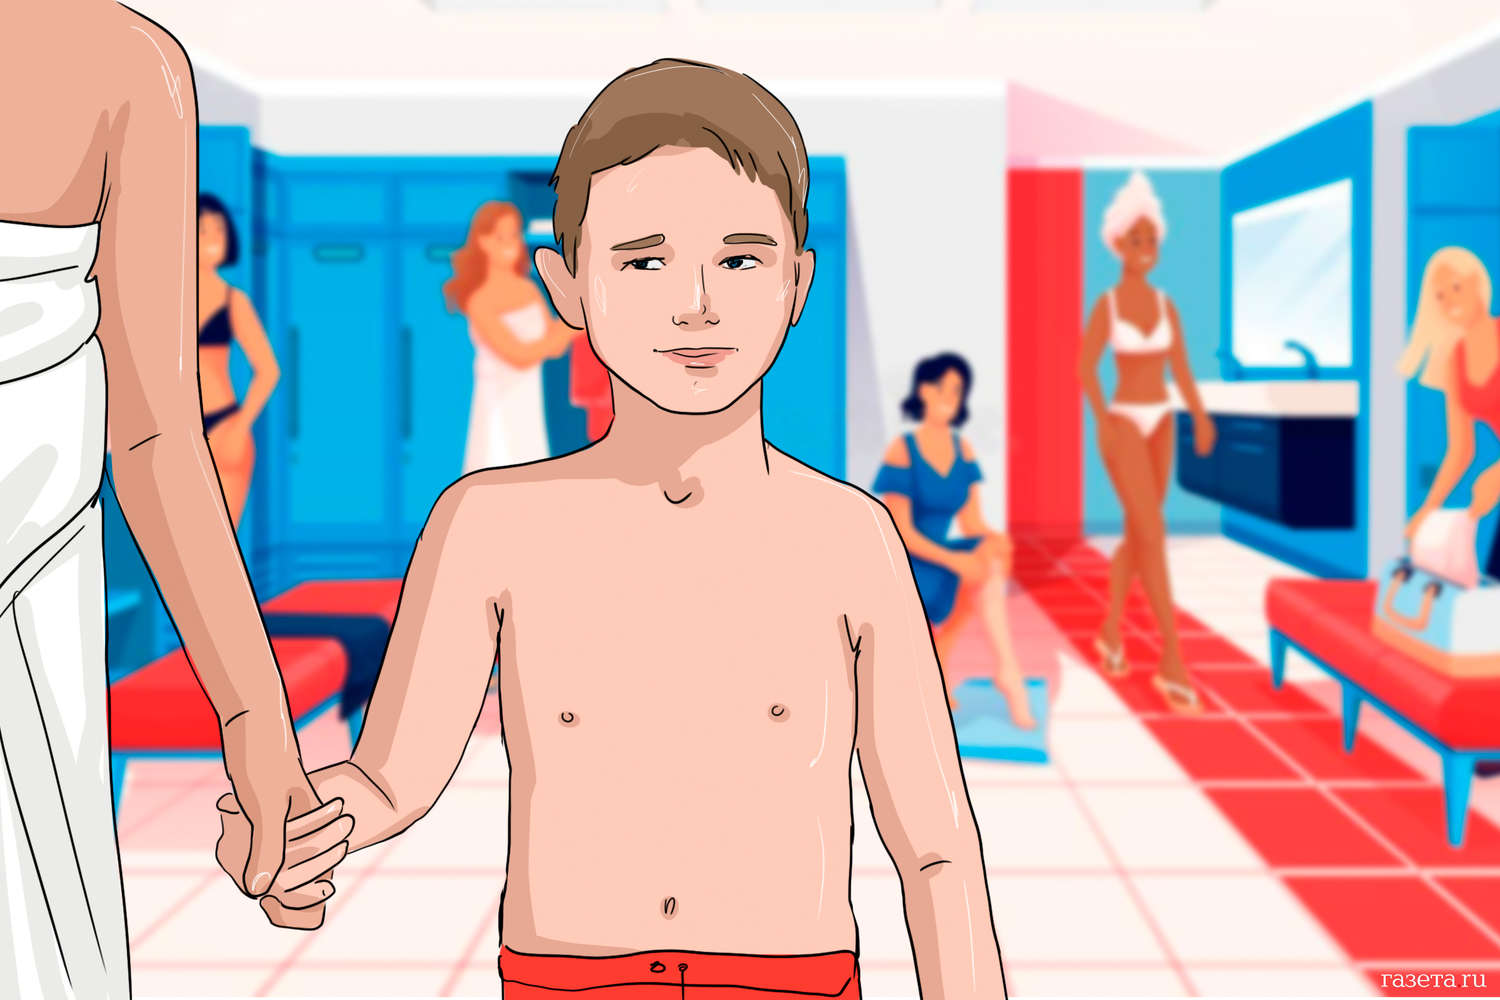 Нарисованные голые дети из аниме довели петербуржца до отдела полиции